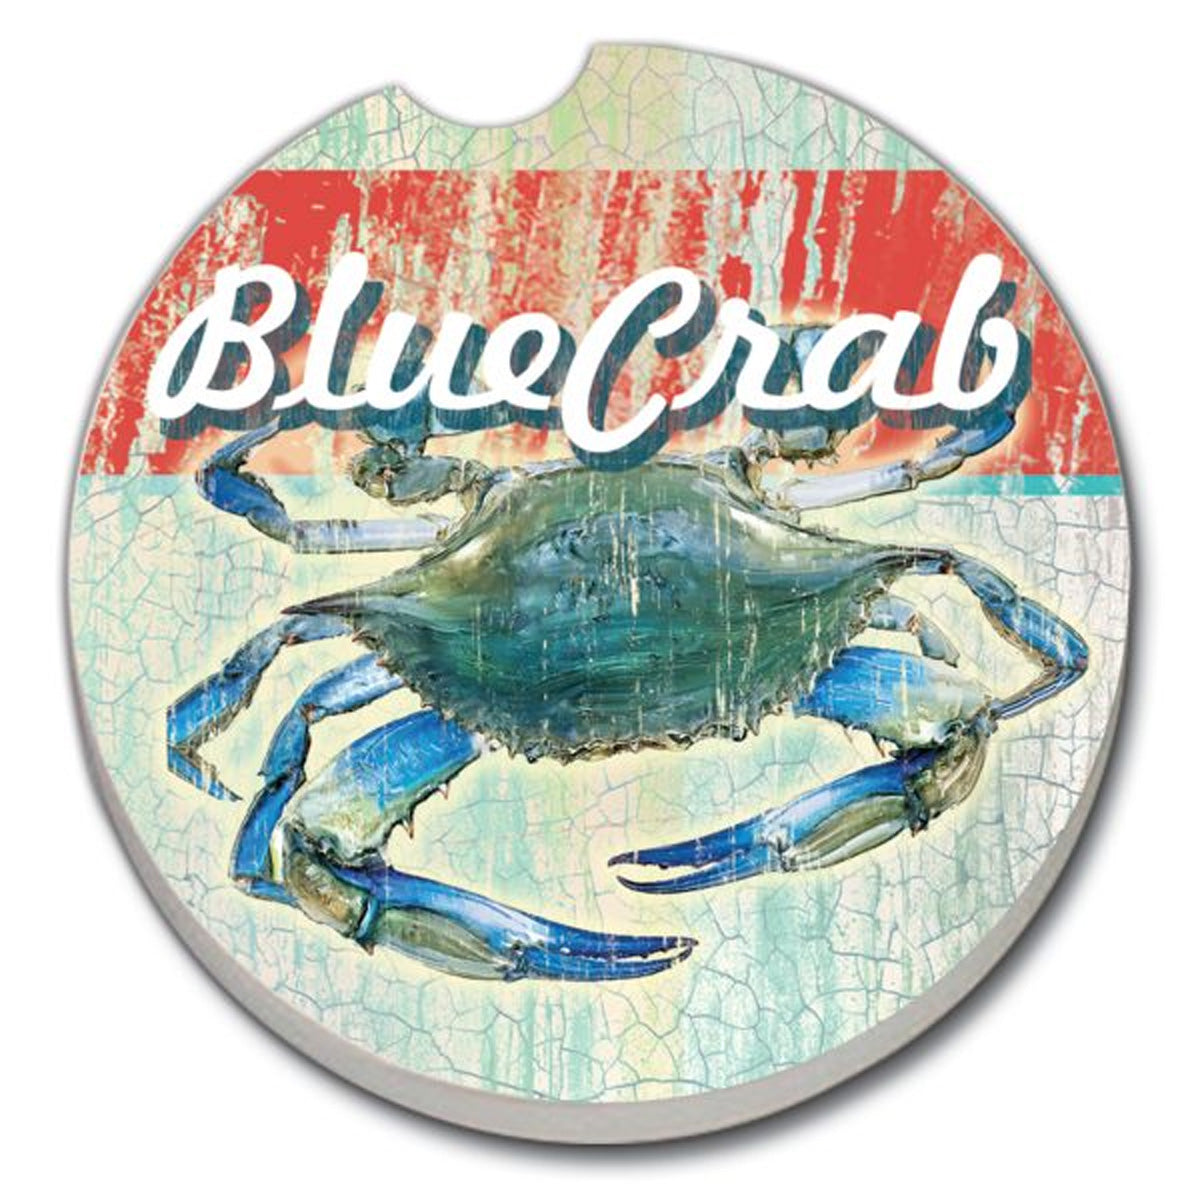 Car Coaster Blue Crab